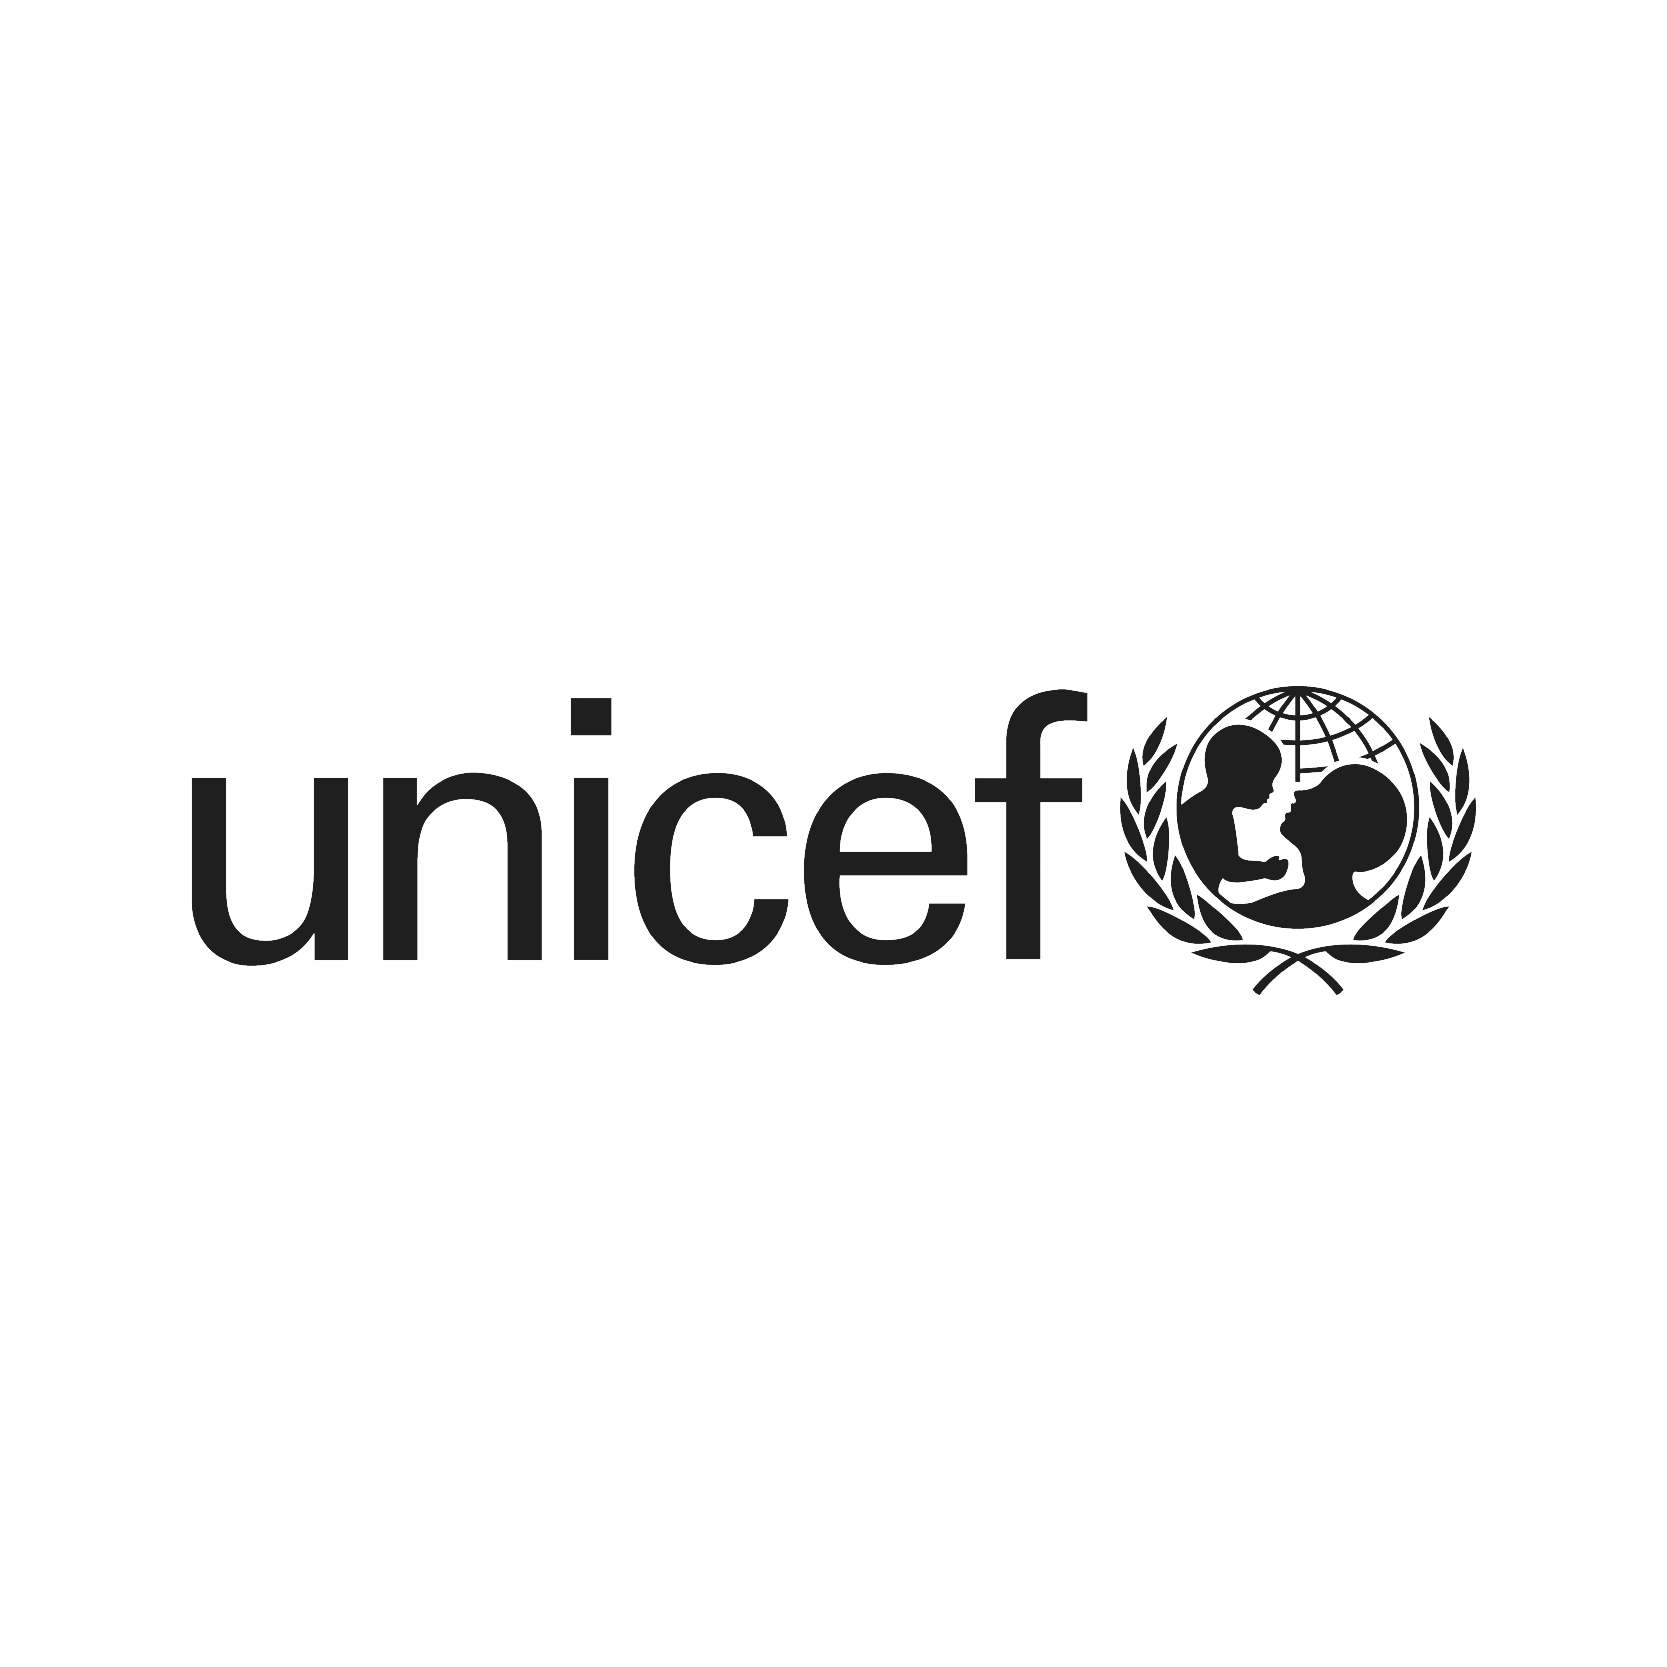 unicef-bw-logo